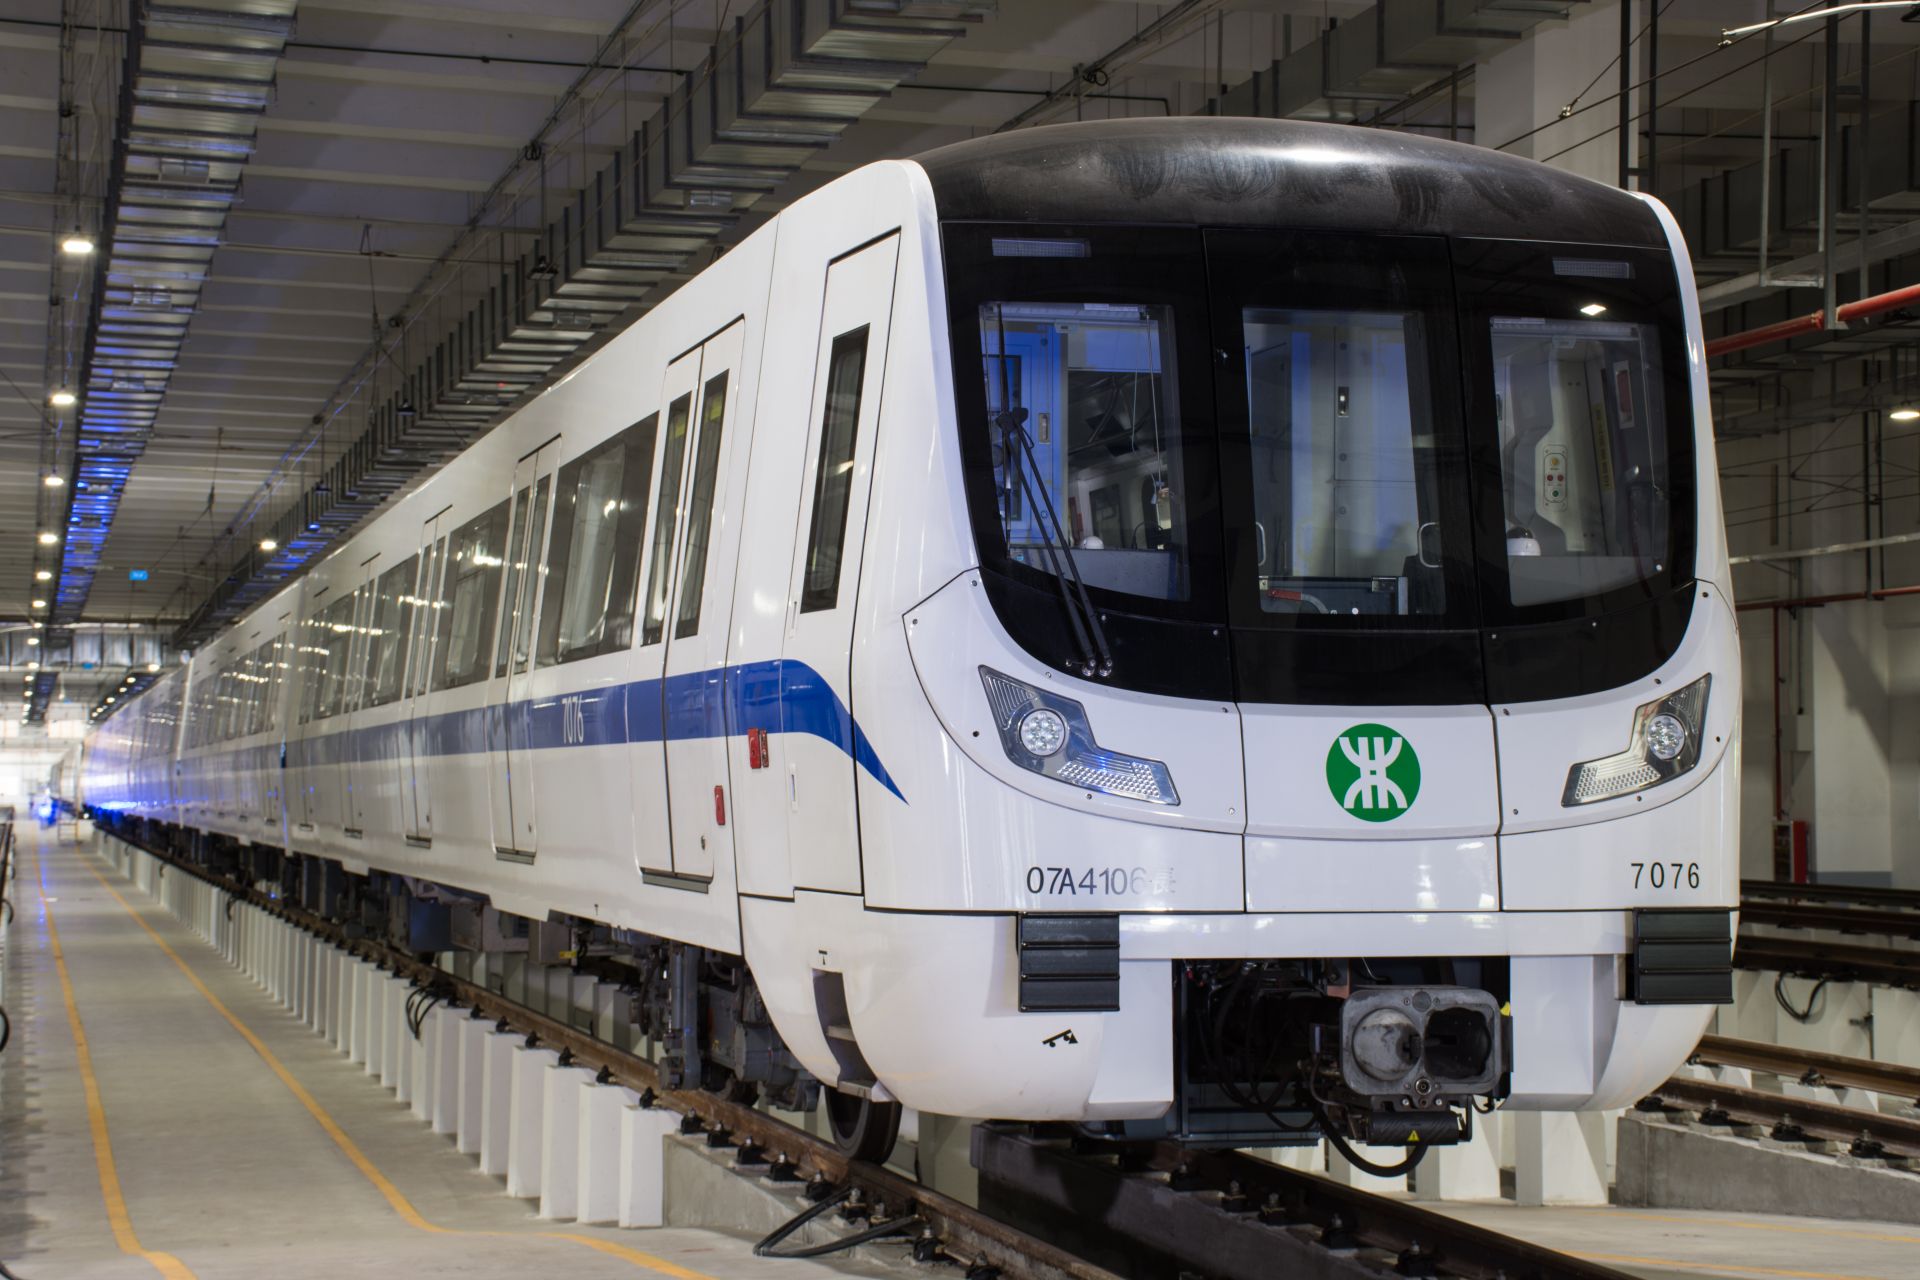 8月23日起地铁7号线压缩行车间隔,首次推出半程末班车服务